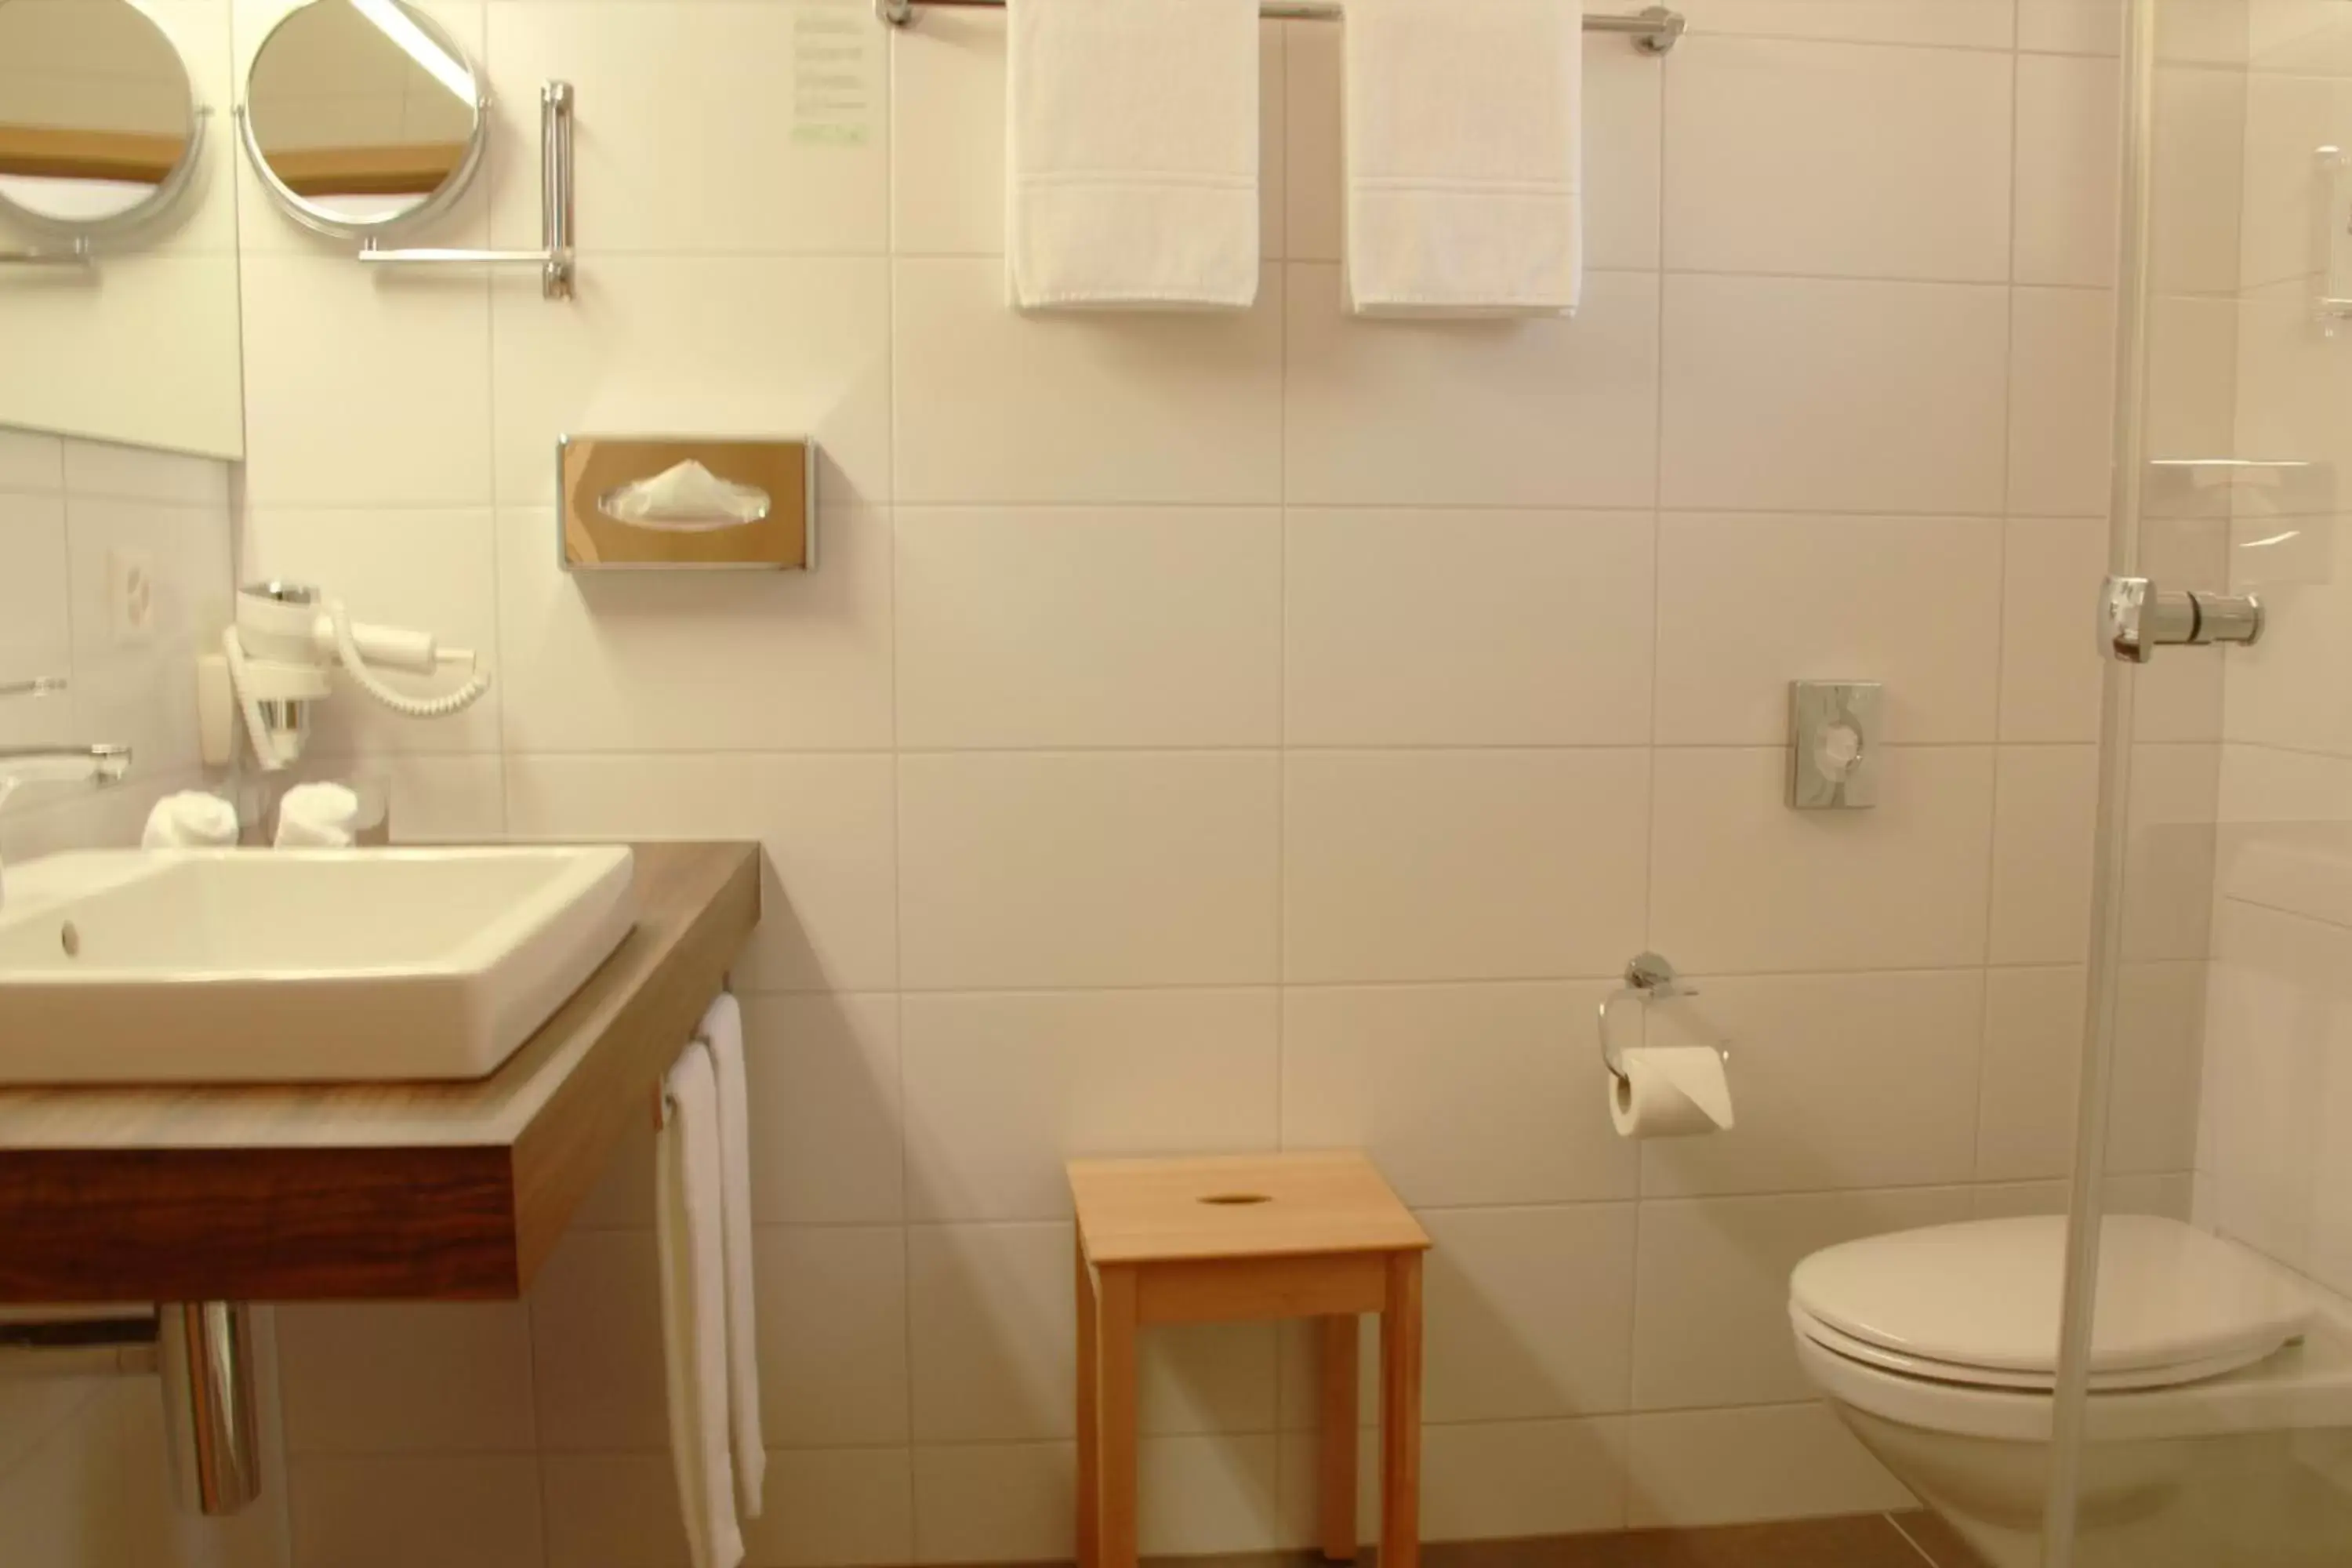 Bathroom in Chalet-Gafri - BnB - Frühstückspension - Service wie im Hotel